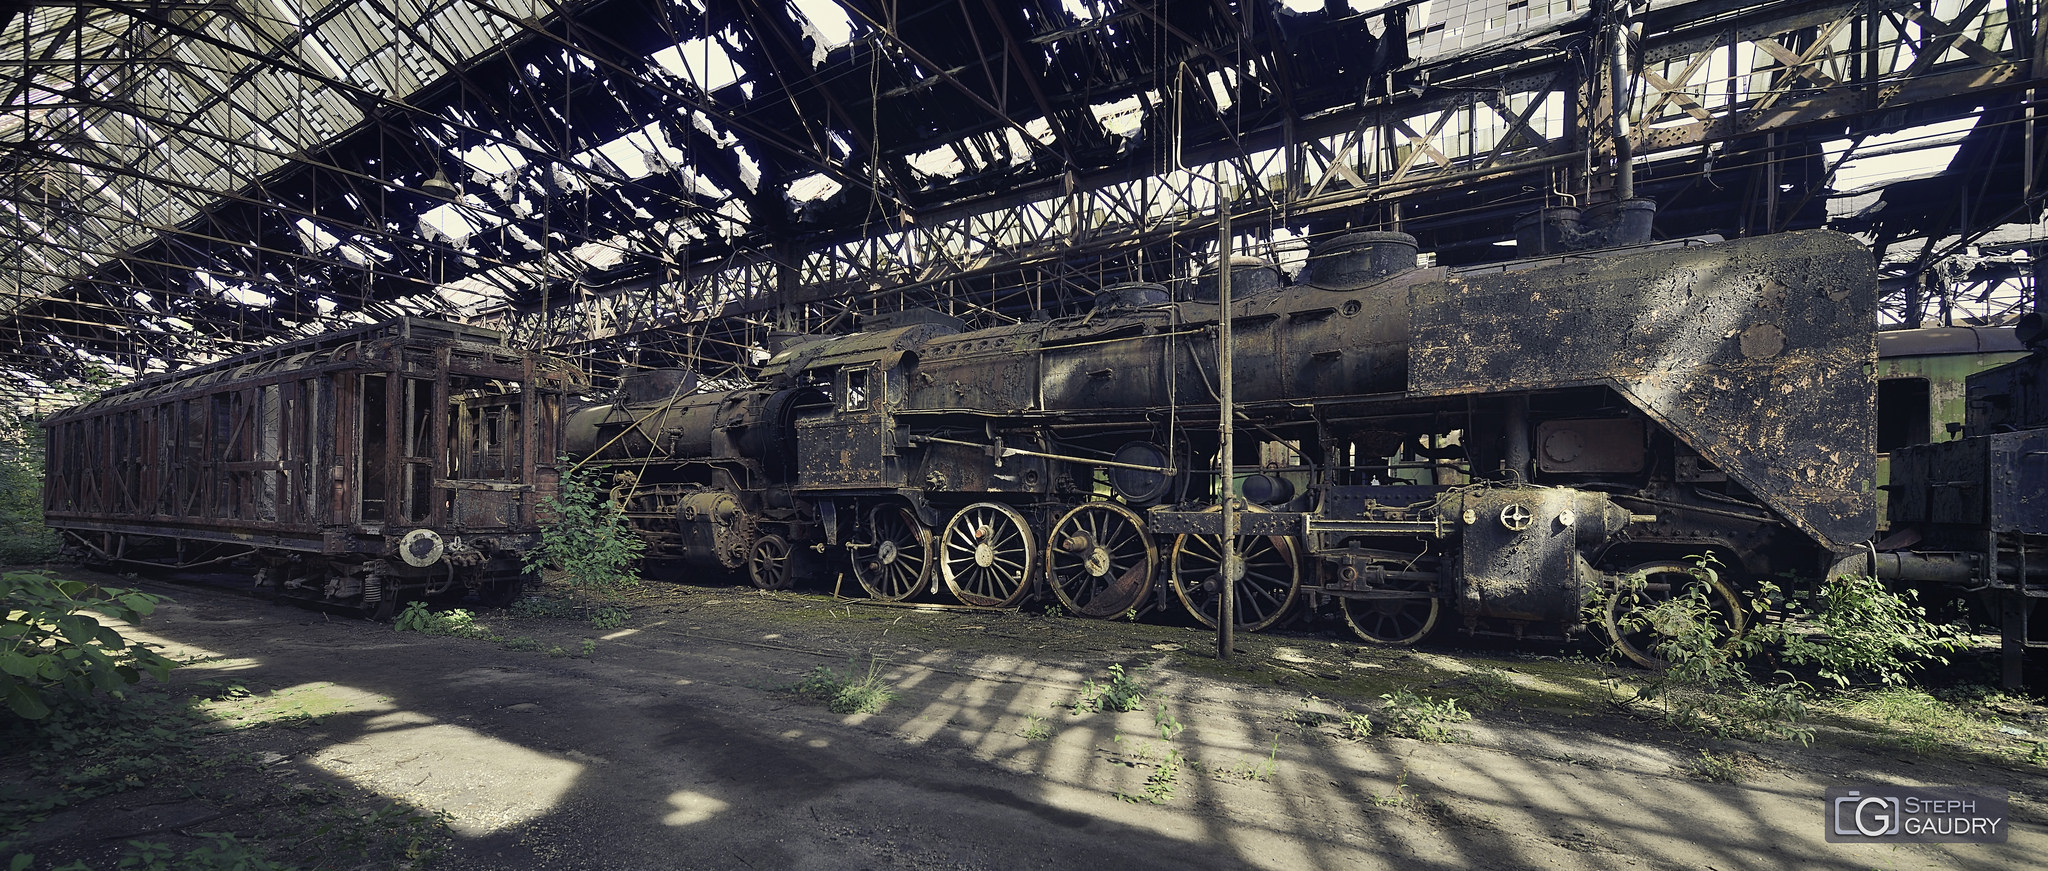 Abandoned steam train [Klik om de diavoorstelling te starten]